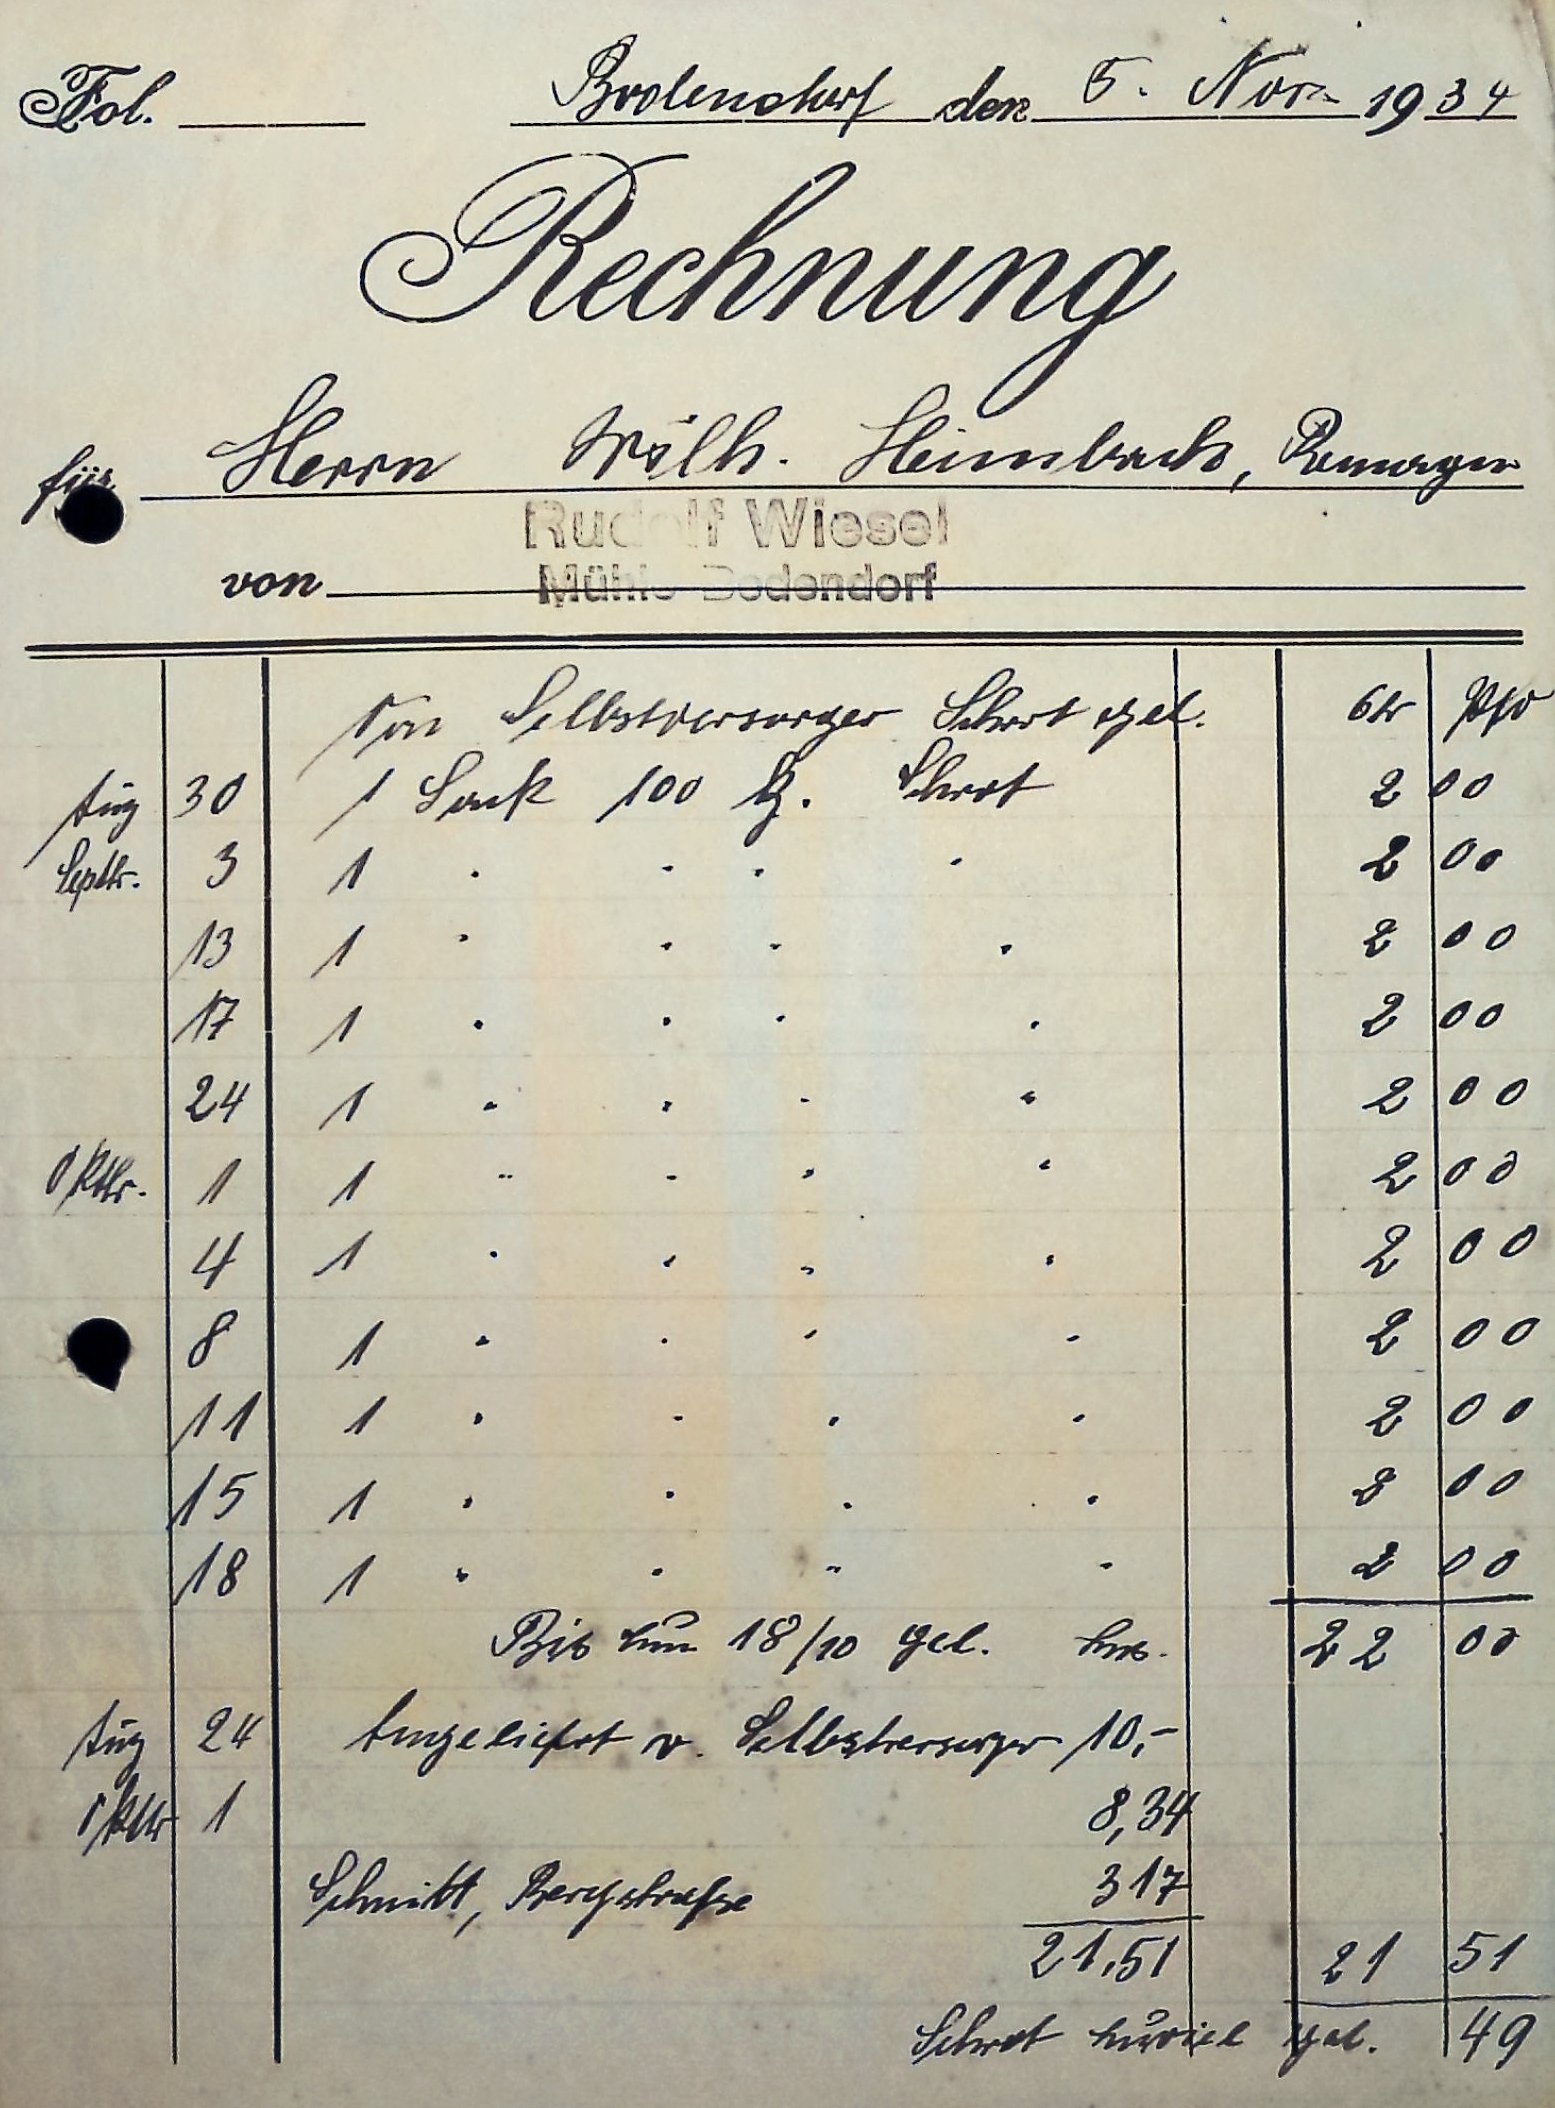 Sammelrechnung für die Lieferung von Mühlenerzeugnisse der Bodendorfer Mühle vom 5.11.1934 (Heimatarchiv Bad Bodendorf CC BY-NC-SA)